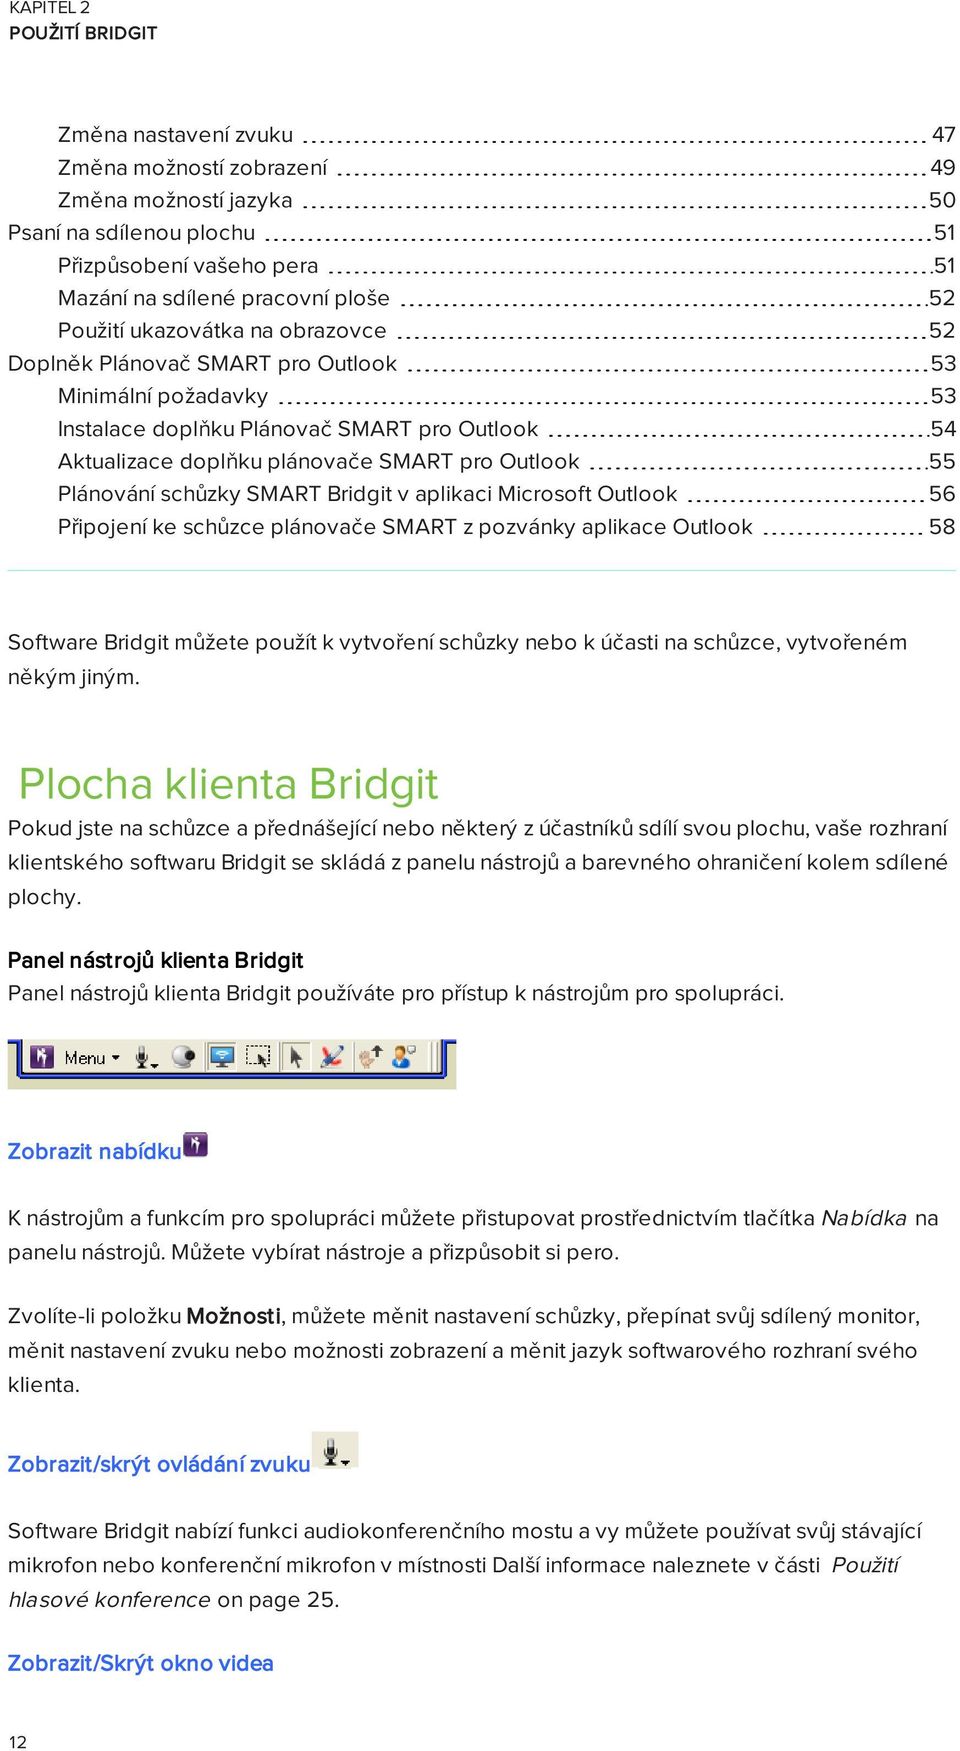 Bridgit v aplikaci Microsoft Outlook 56 Připojení ke schůzce plánovače SMART z pozvánky aplikace Outlook 58 Software Bridgit můžete použít k vytvoření schůzky nebo k účasti na schůzce, vytvořeném